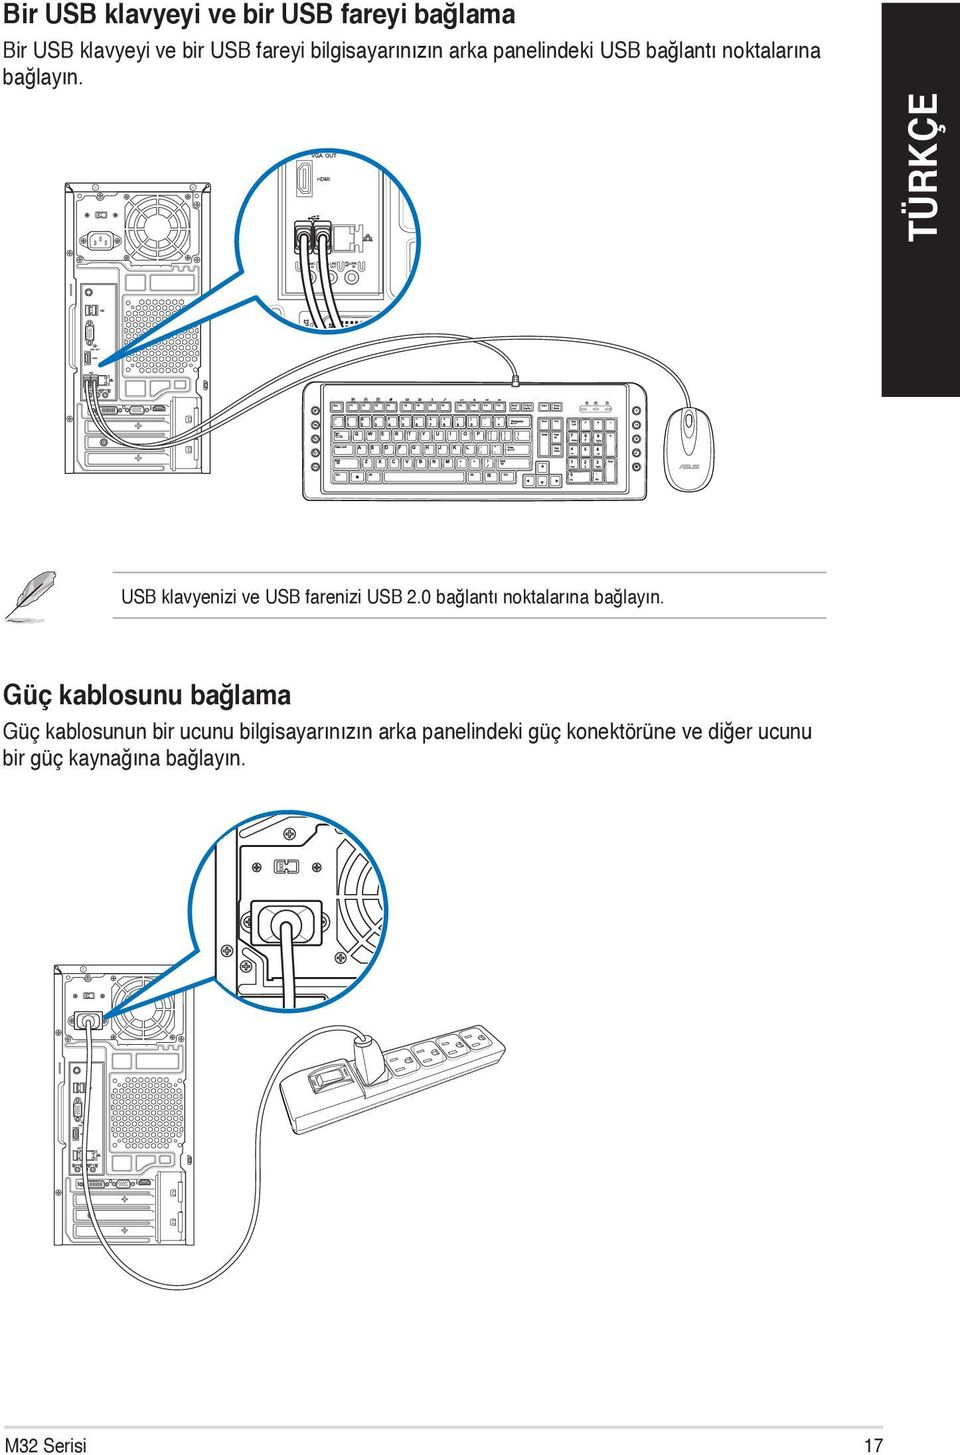 ` USB klavyenizi ve USB farenizi USB 2.0 bağlantı noktalarına bağlayın.